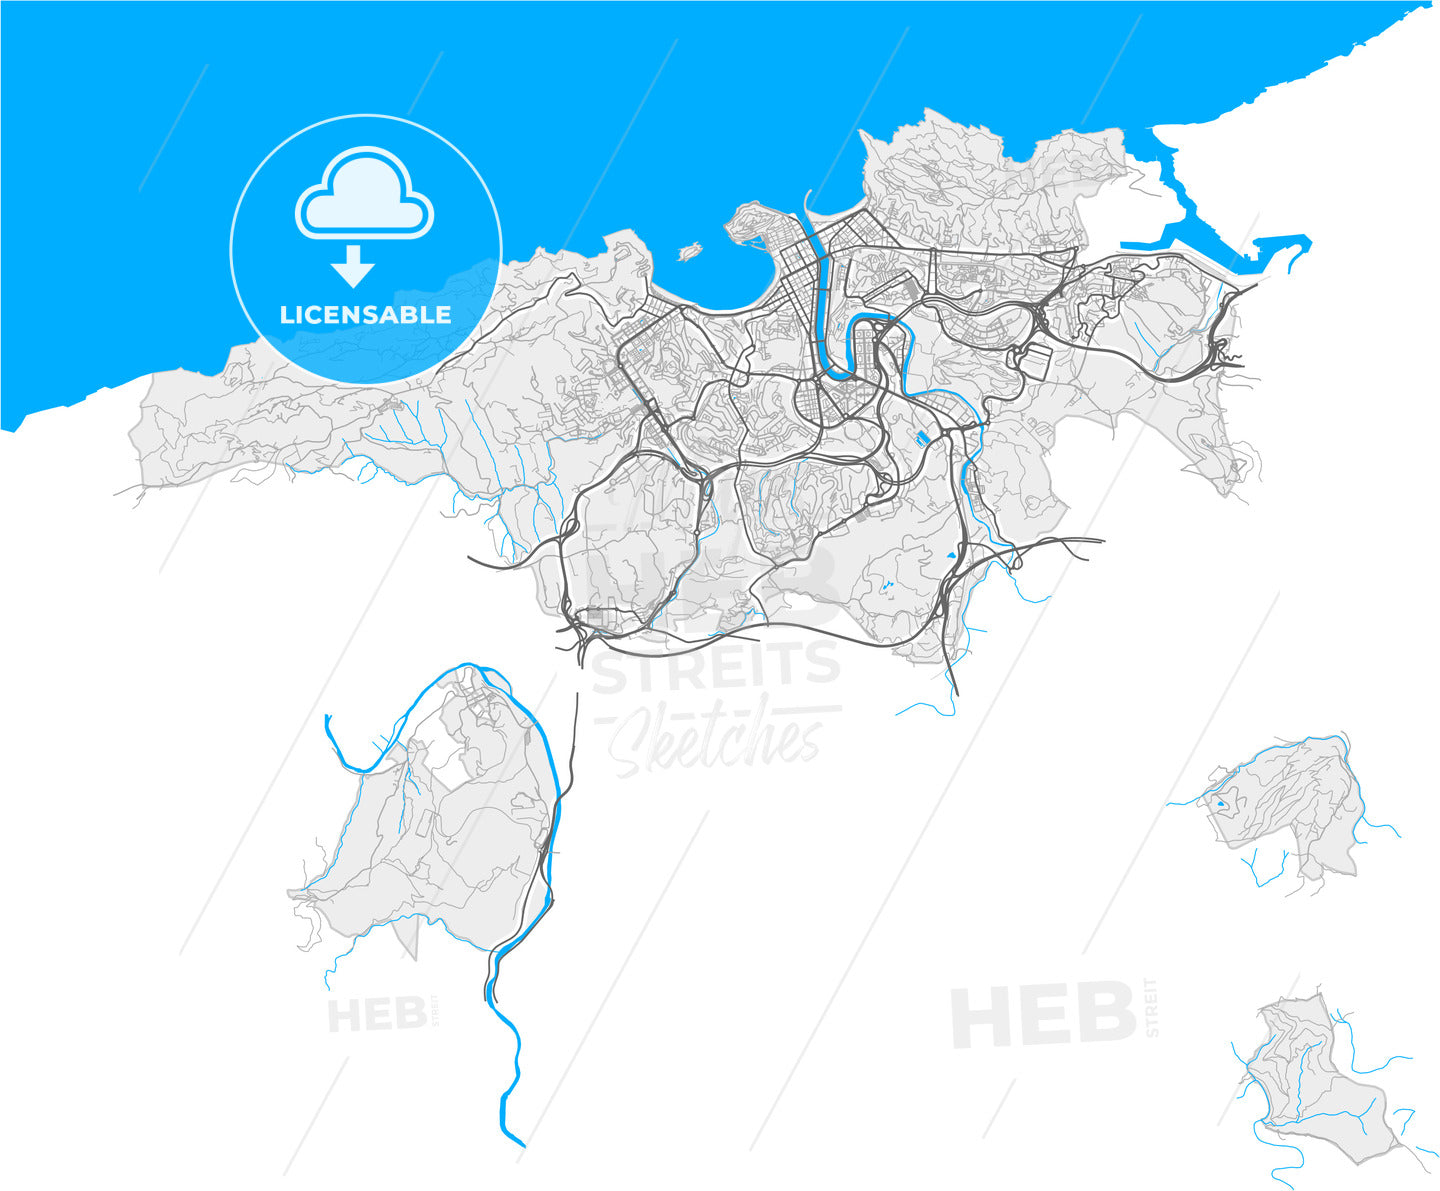 Donostia / San Sebastián, Gipuzkoa, Spain, high quality vector map